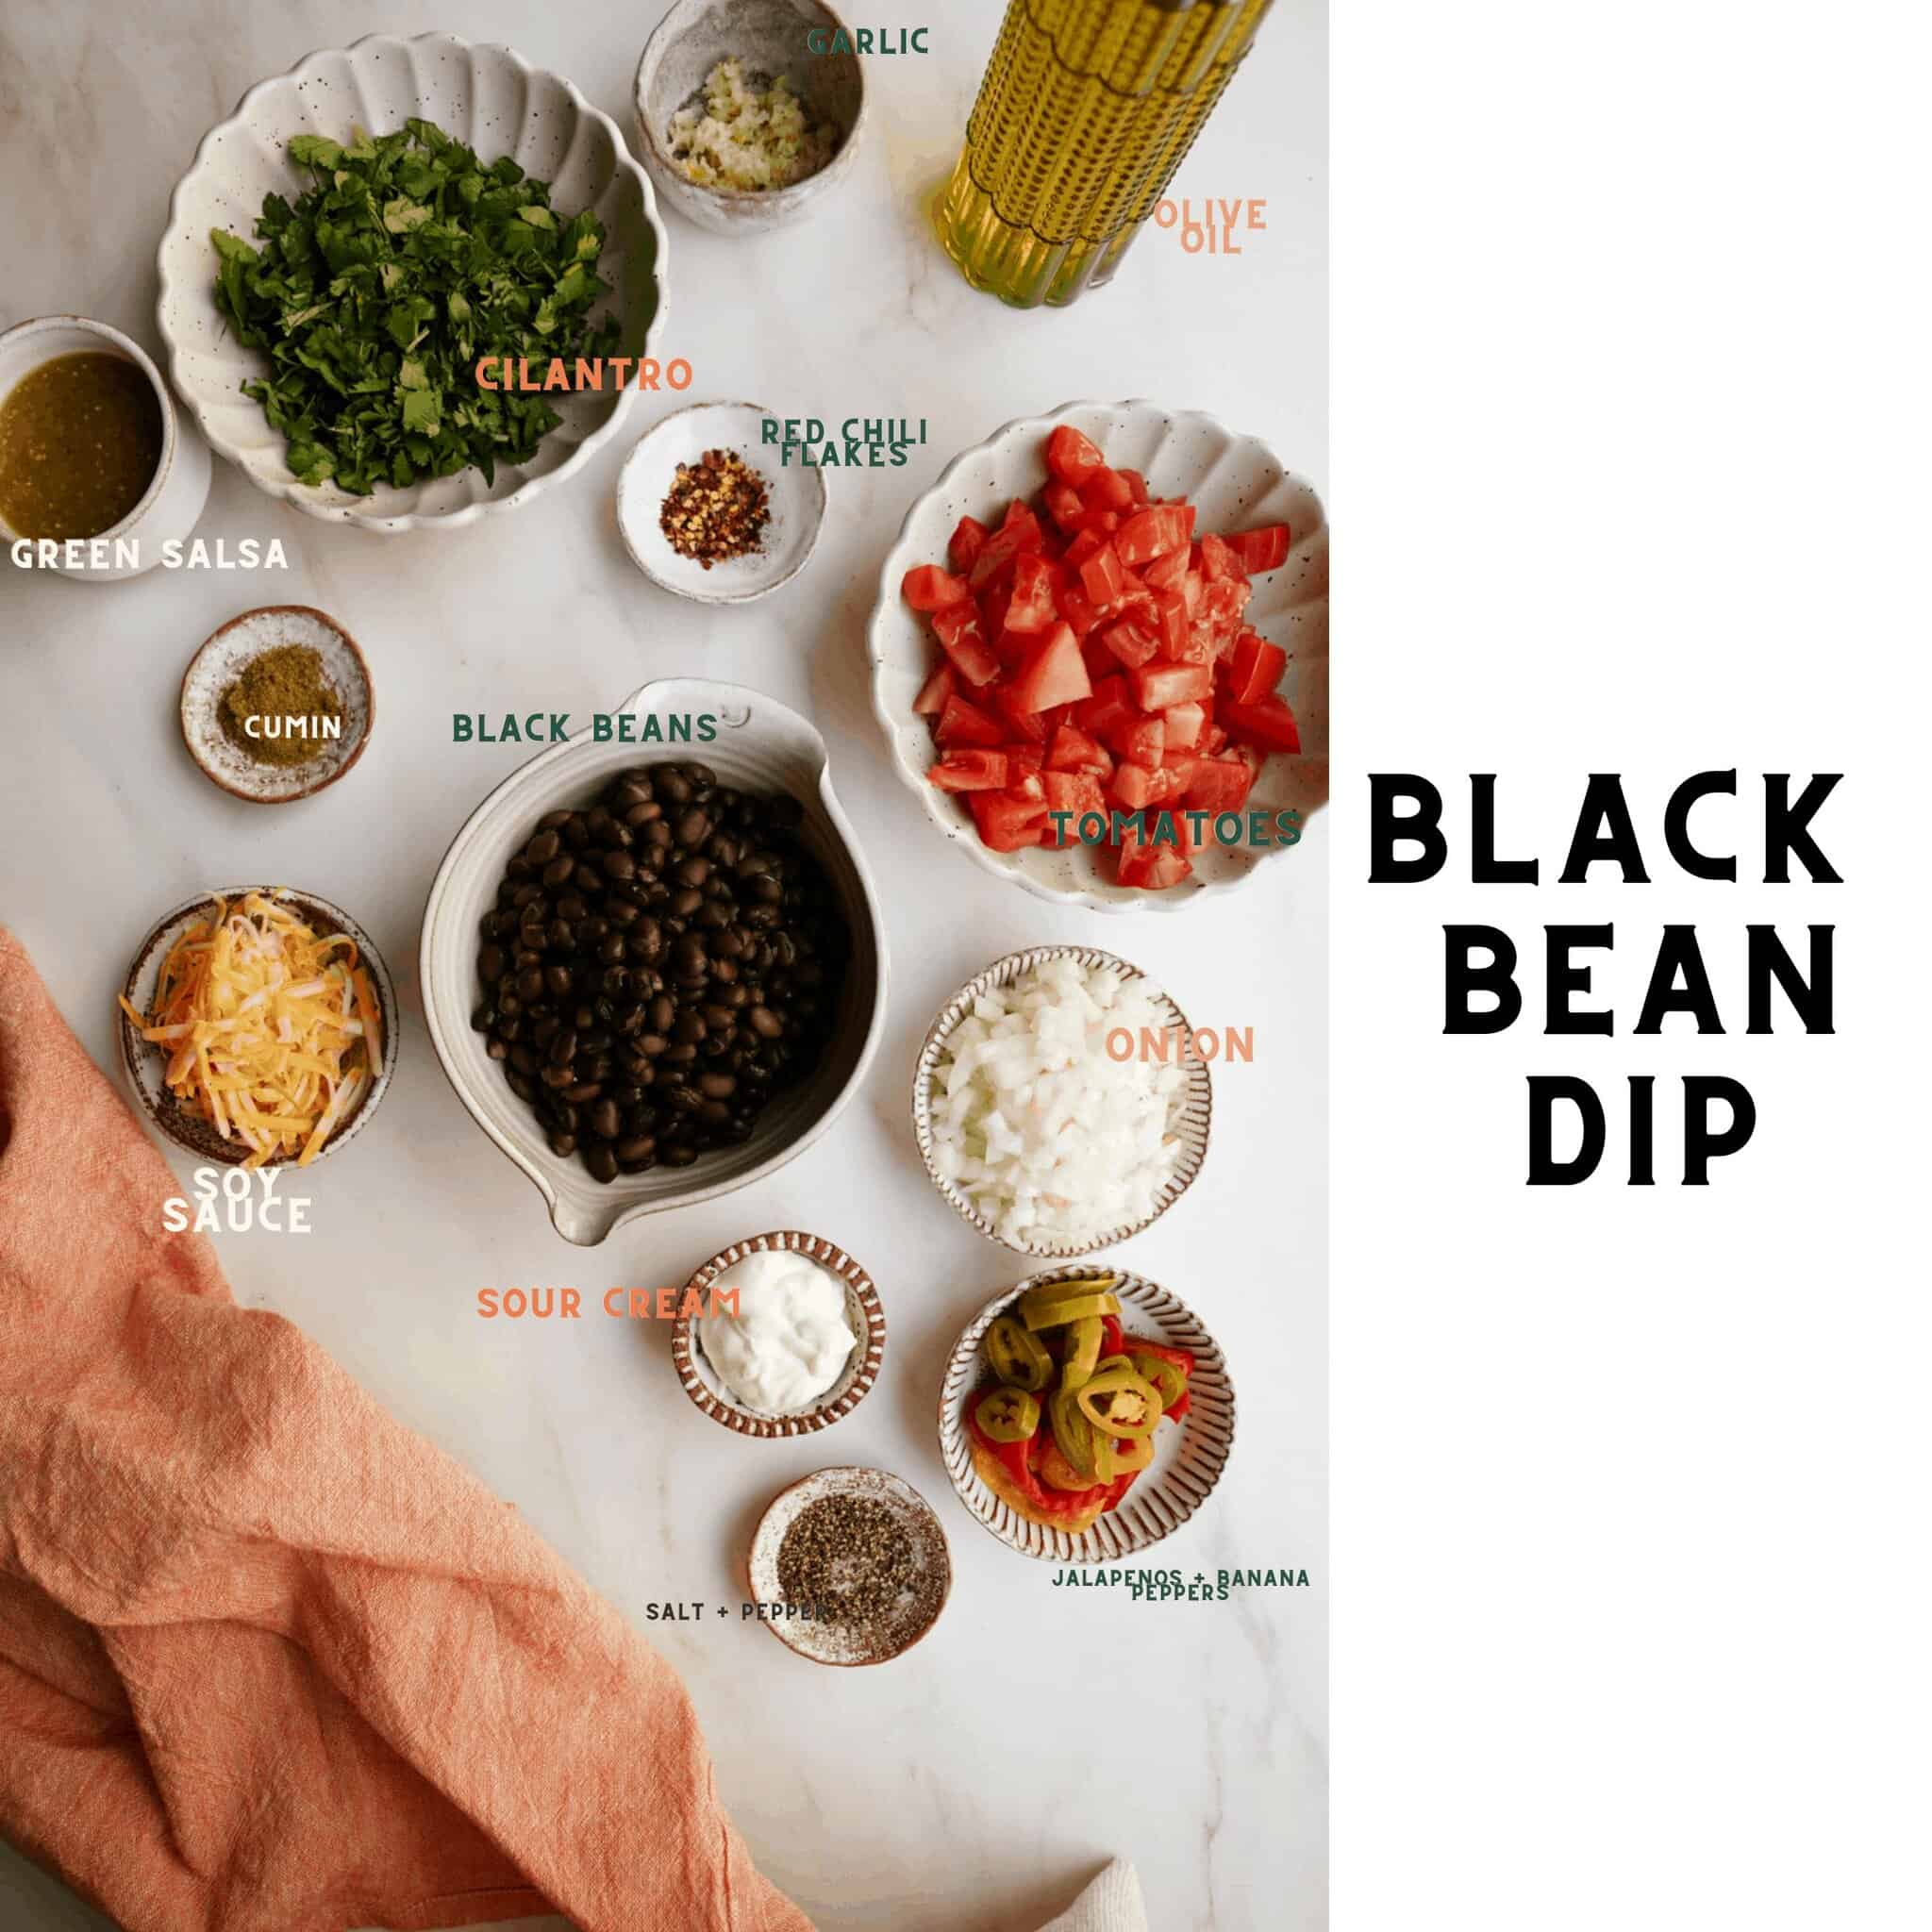 Ingredients to make black bean dip recipe.